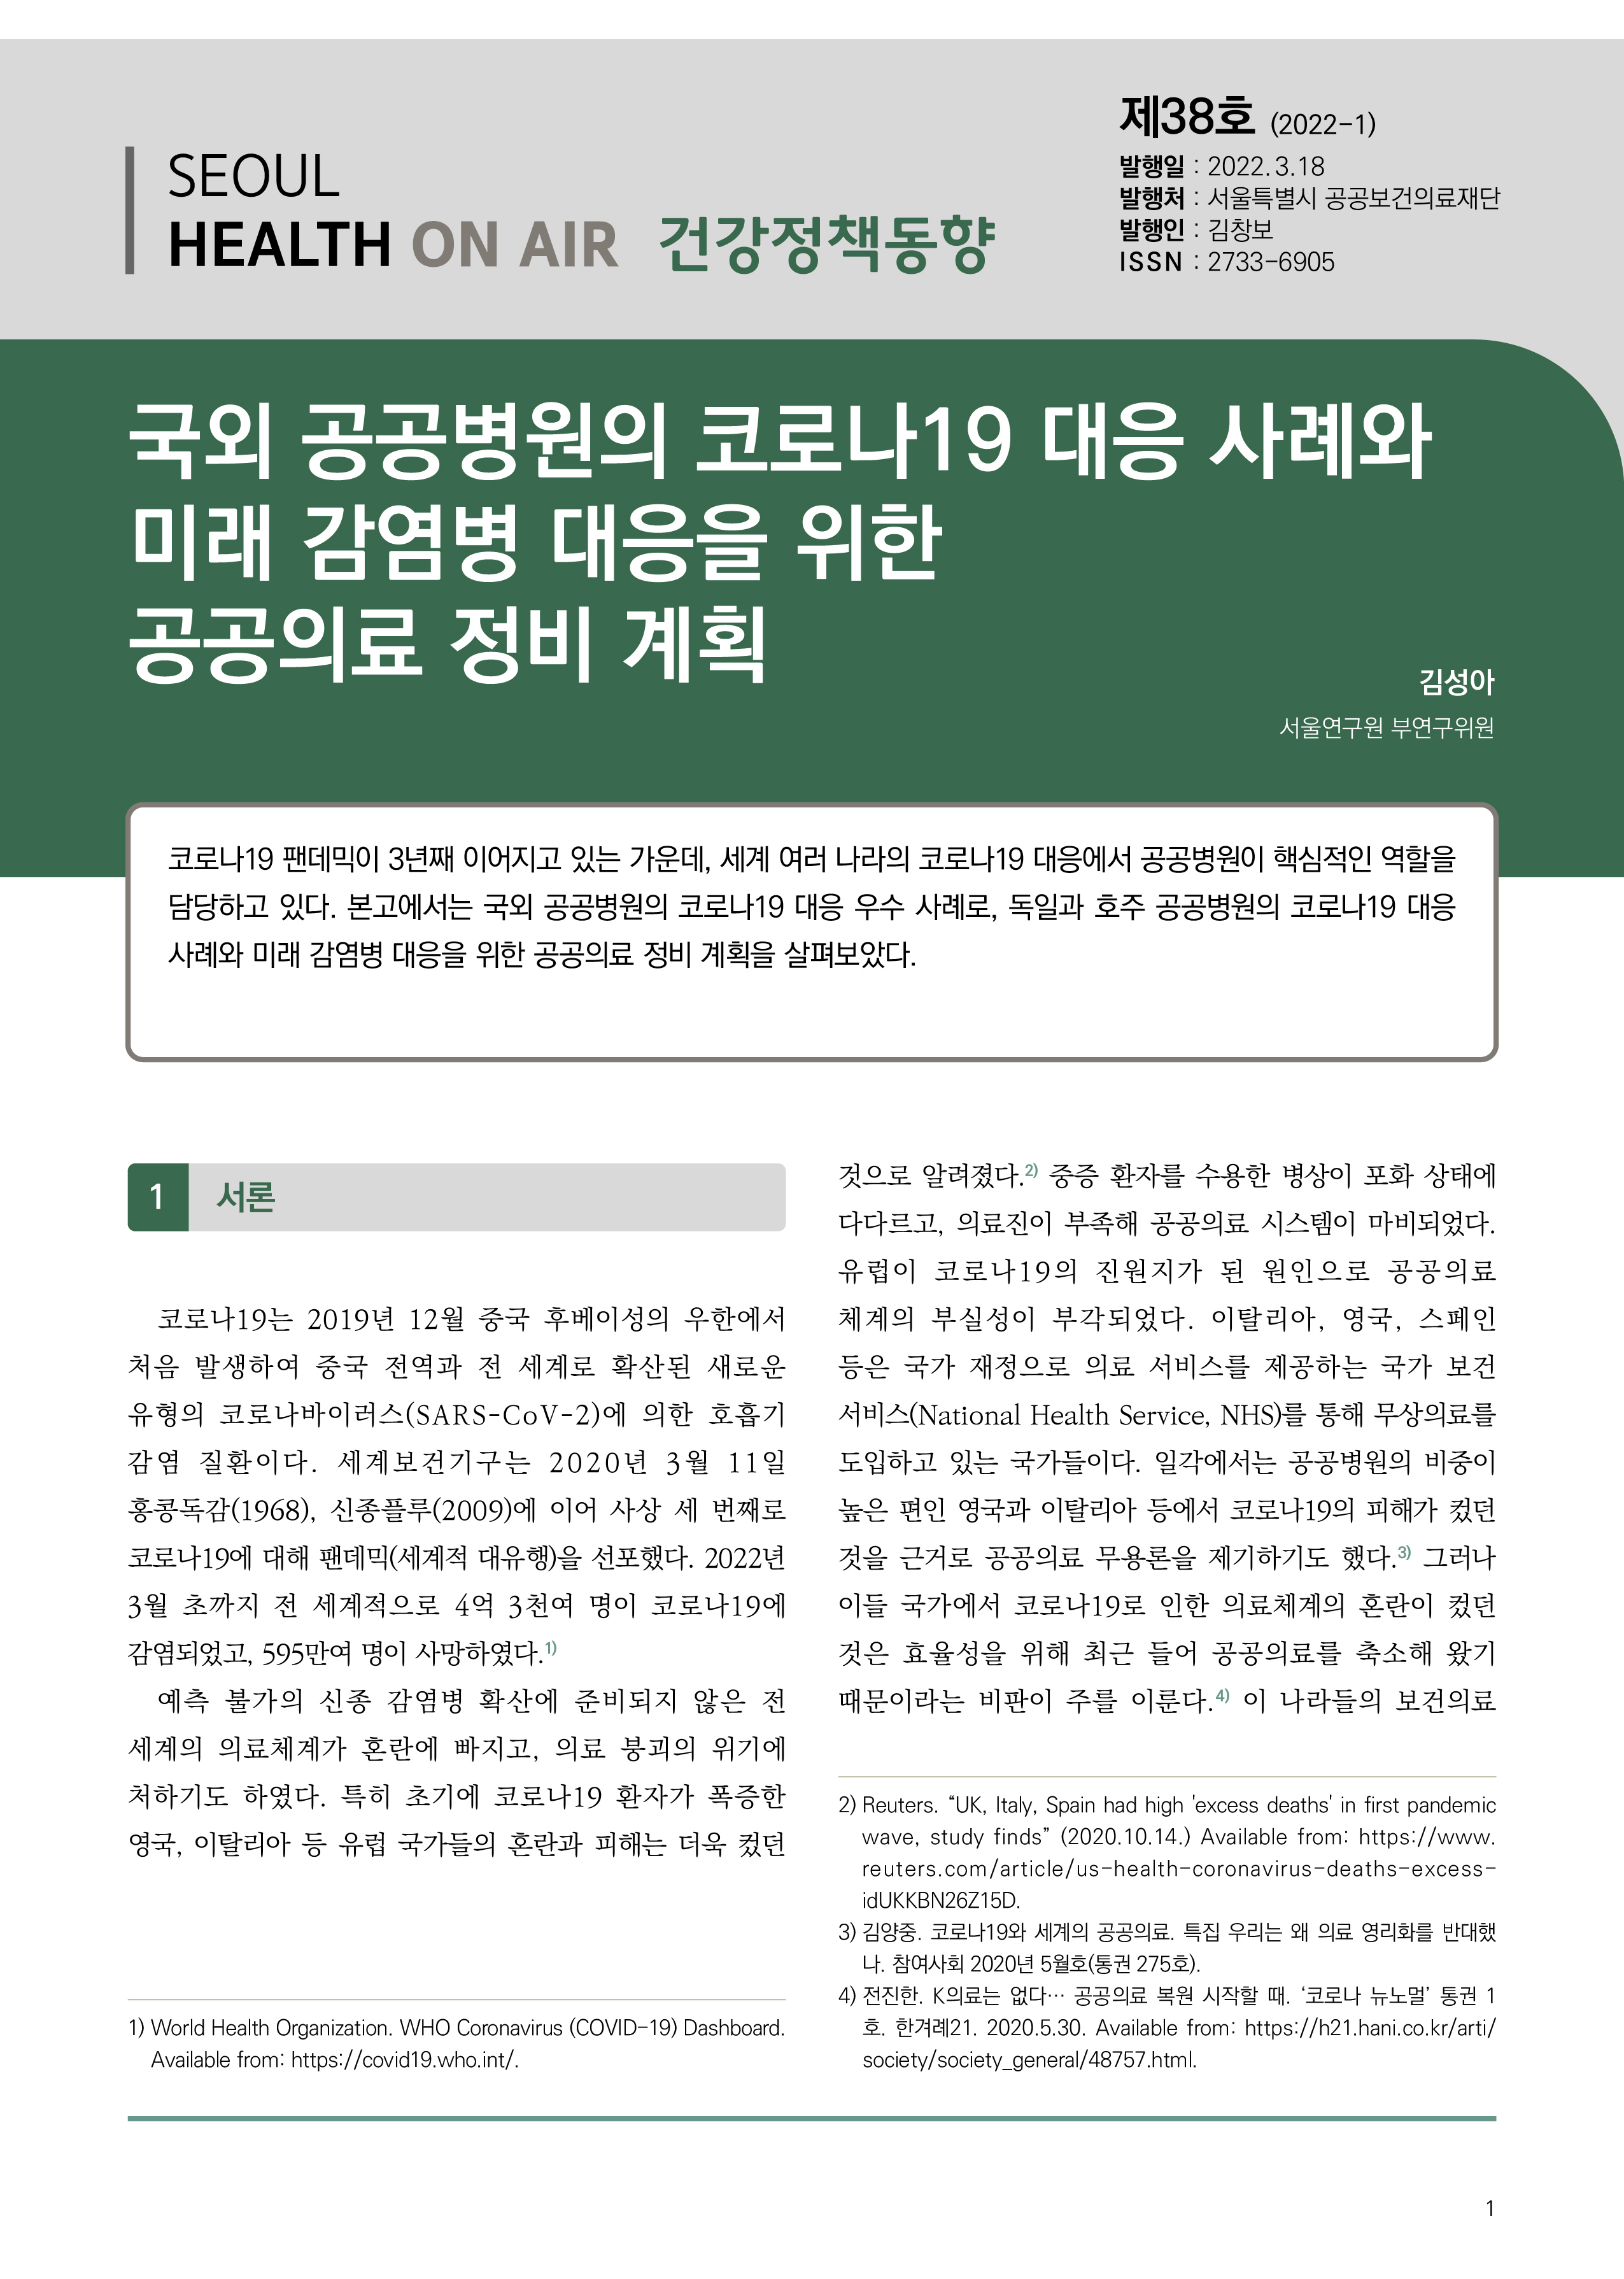 국외 공공병원의 코로나19 대응 사례와 미래 감염병 대응을 위한 공공의료 정비 계획(건강정책동향 Vol.38)  Seoul Health On-Air